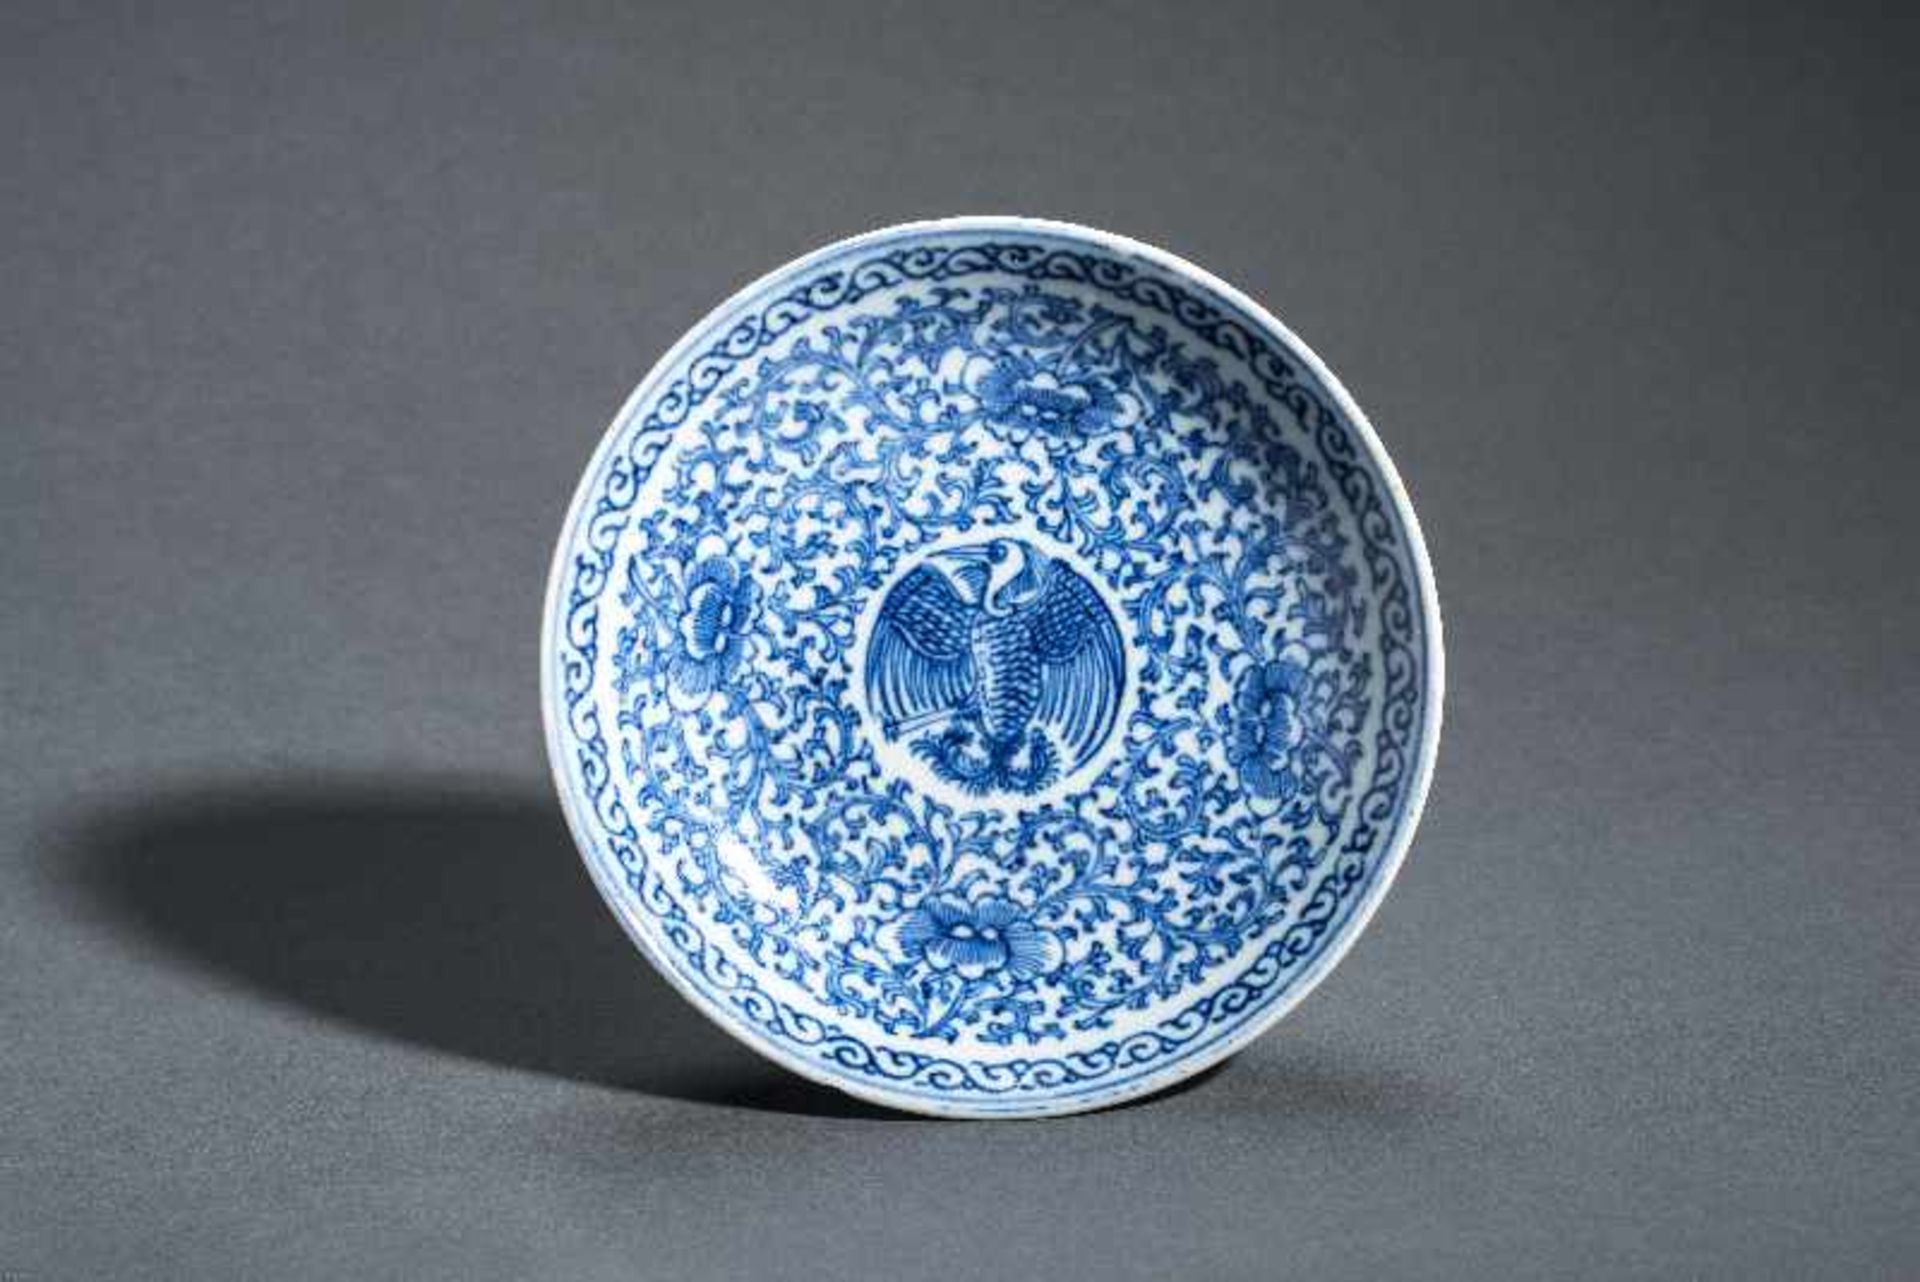 FUSS-SCHALE MIT VOGEL UND LOTUSBLÜTEN Blauweiß-Porzellan. China, Qing-Dynastie, 19. Jh. Flache - Image 2 of 4